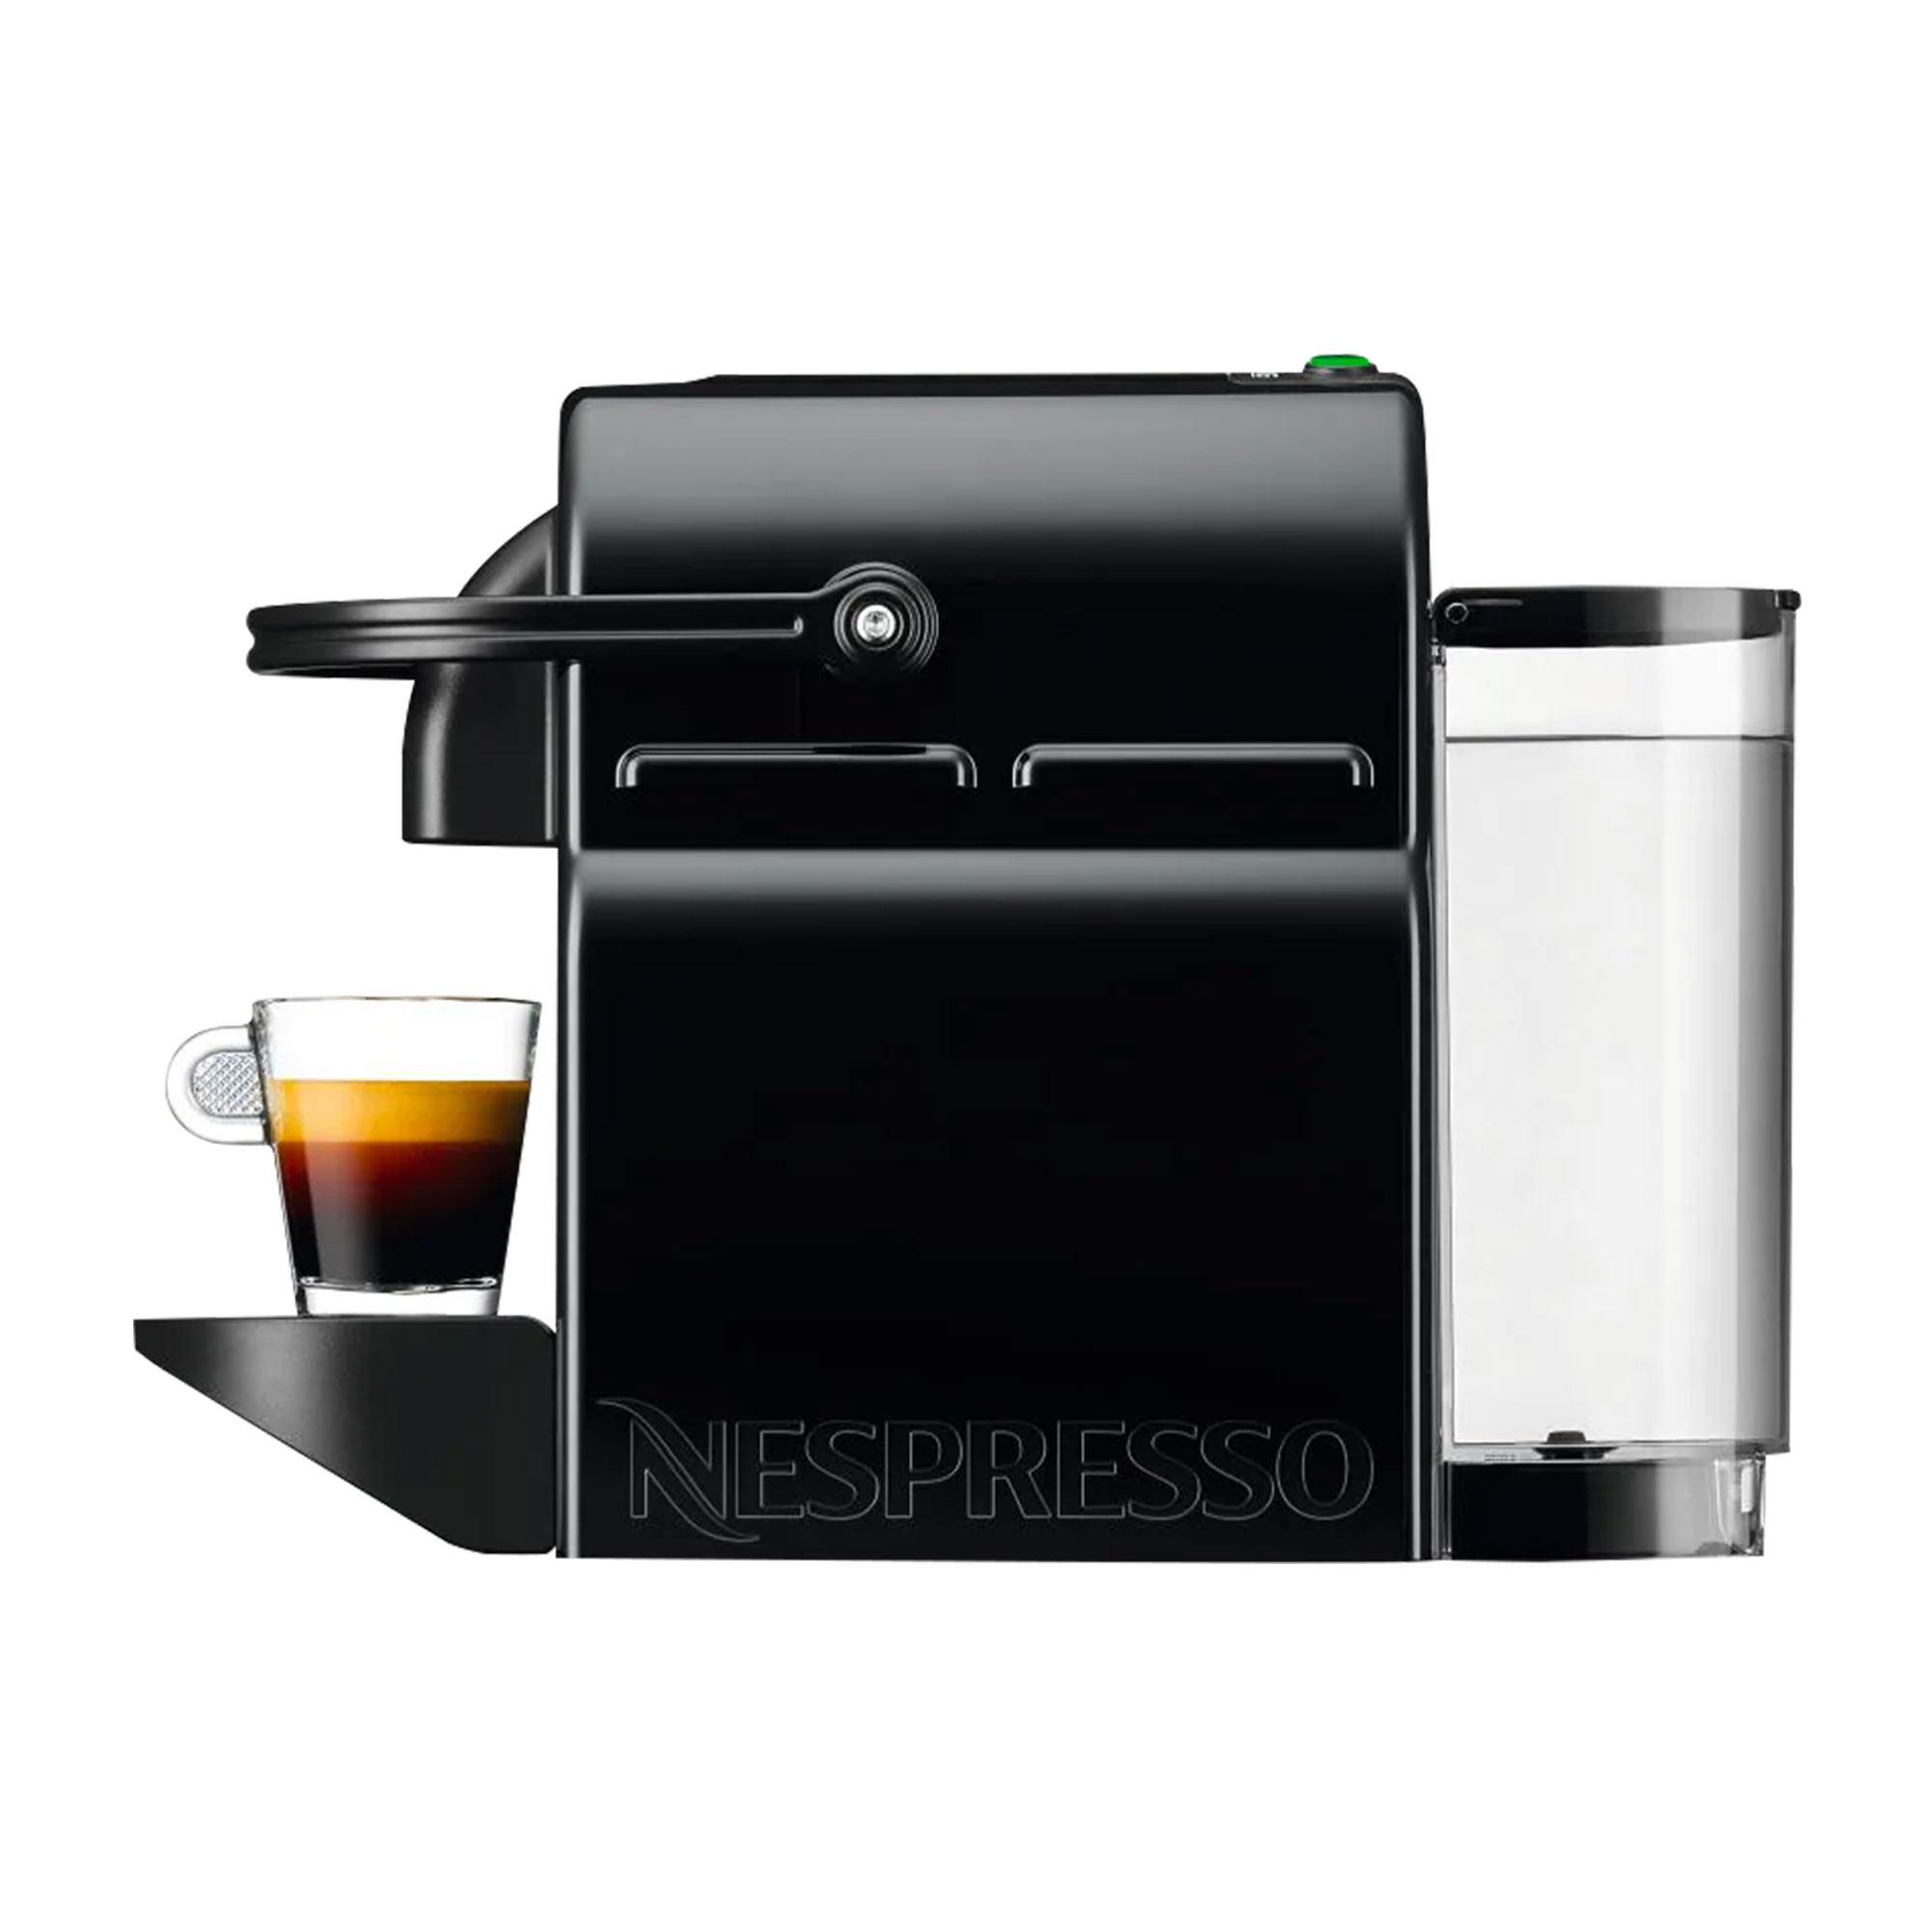 DeLonghi Nespresso Inissia EN80BAE Coffee Machine Black Image 3